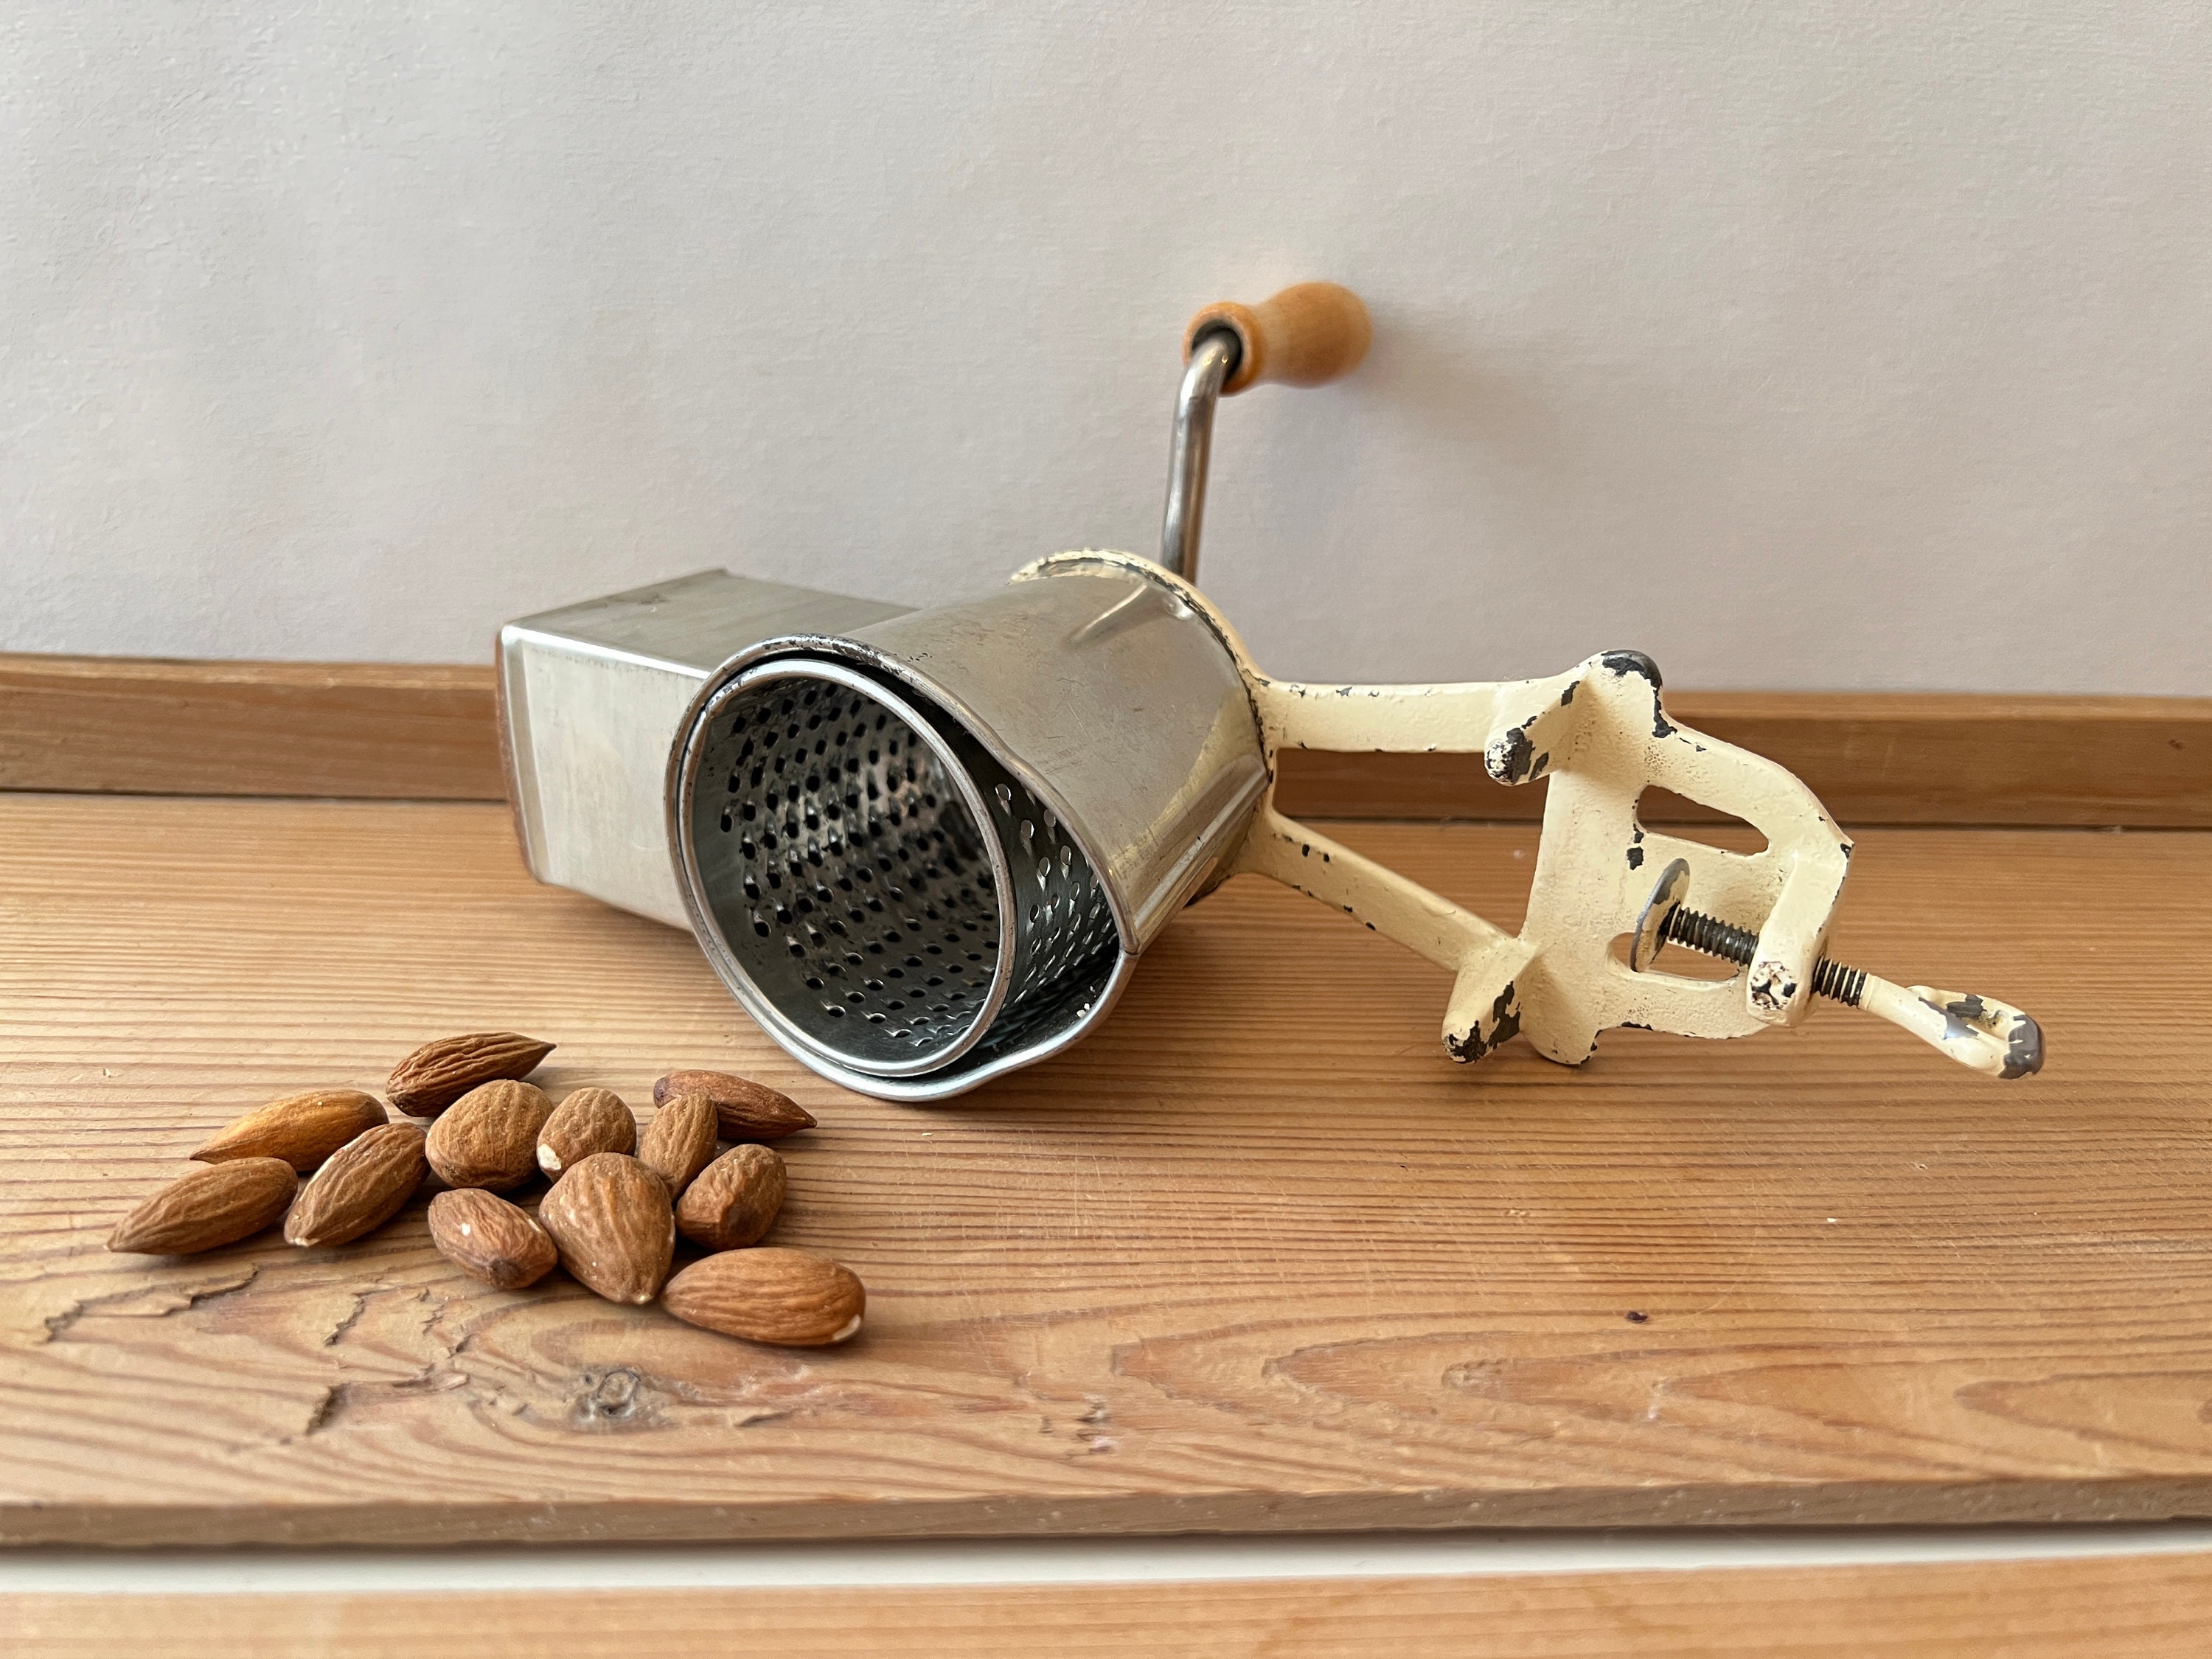 Nut Chopper Hand Cranking Bean Spice Grinder Seeds Kitchen with